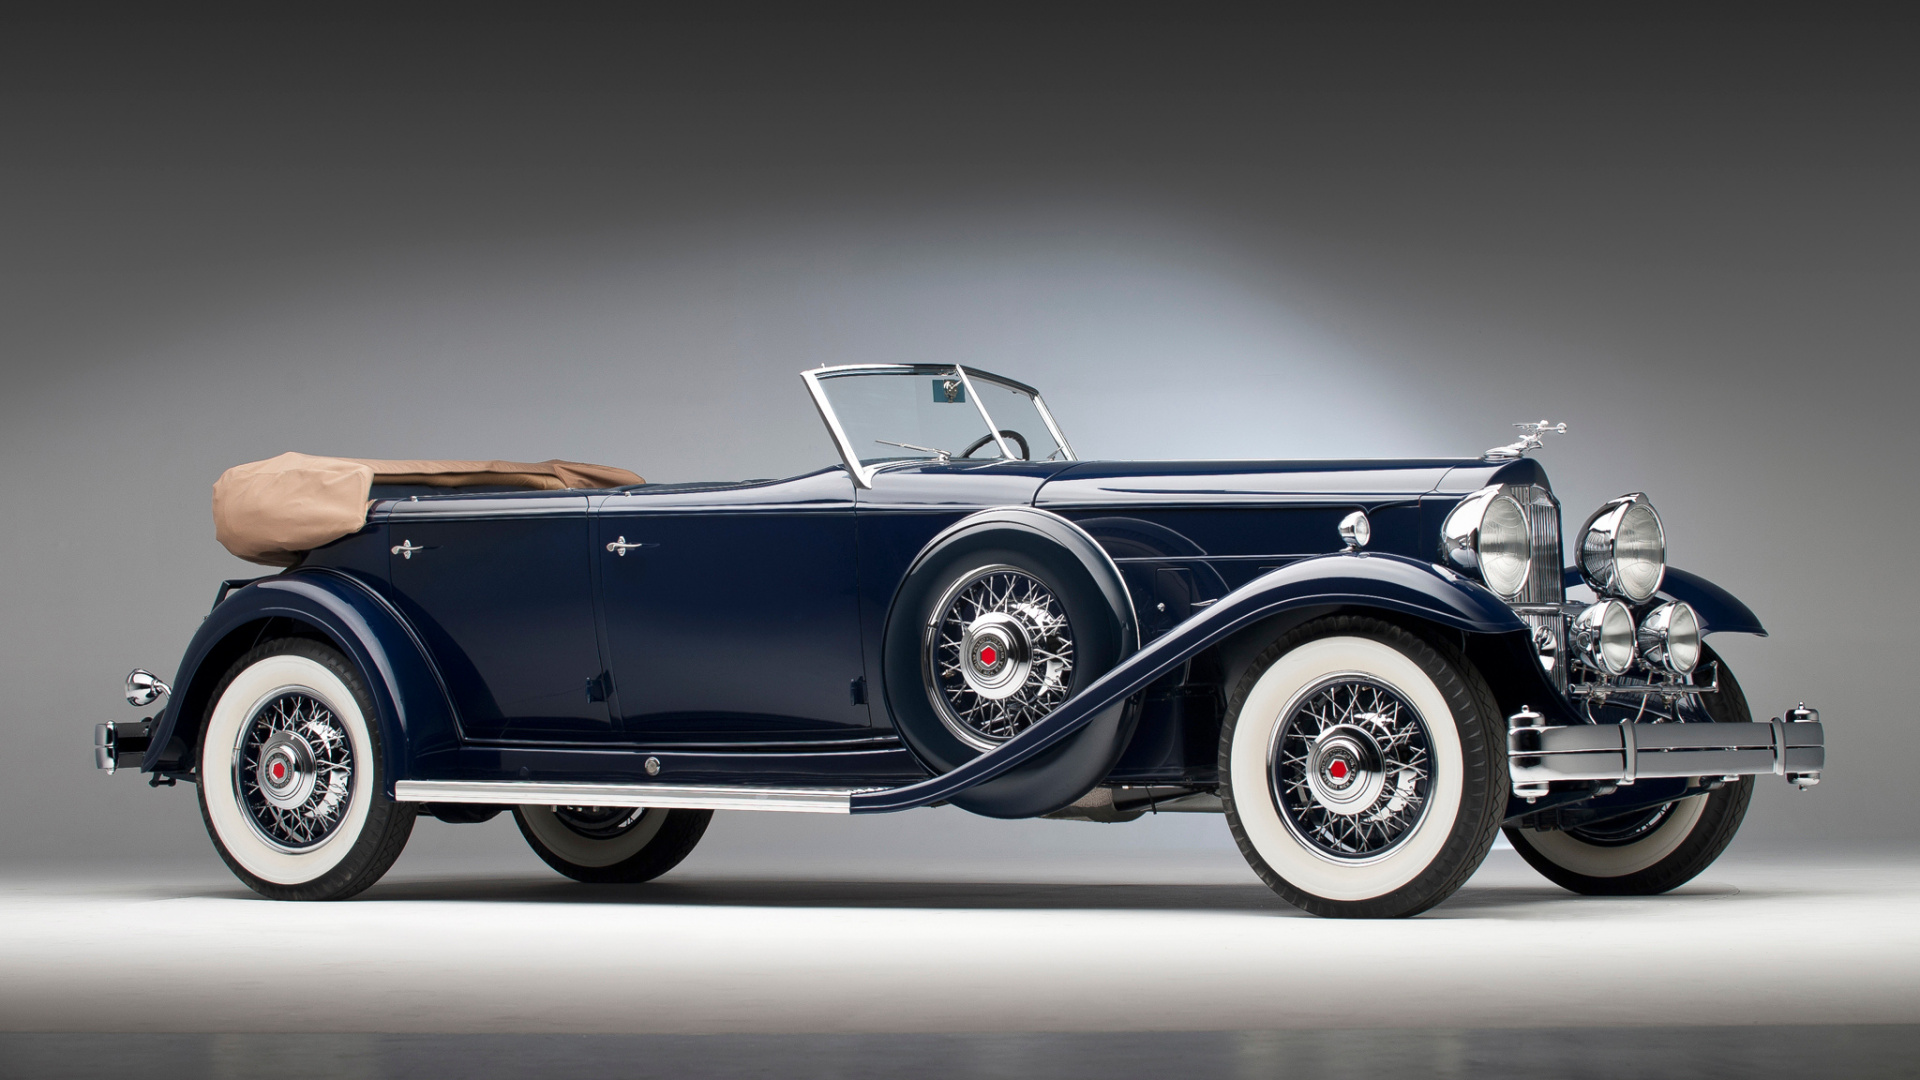 Wallpaper Navy Blue, Classic Car, Rm Sotheby, 1932 - 1932 Packard Sport Phaeton , HD Wallpaper & Backgrounds